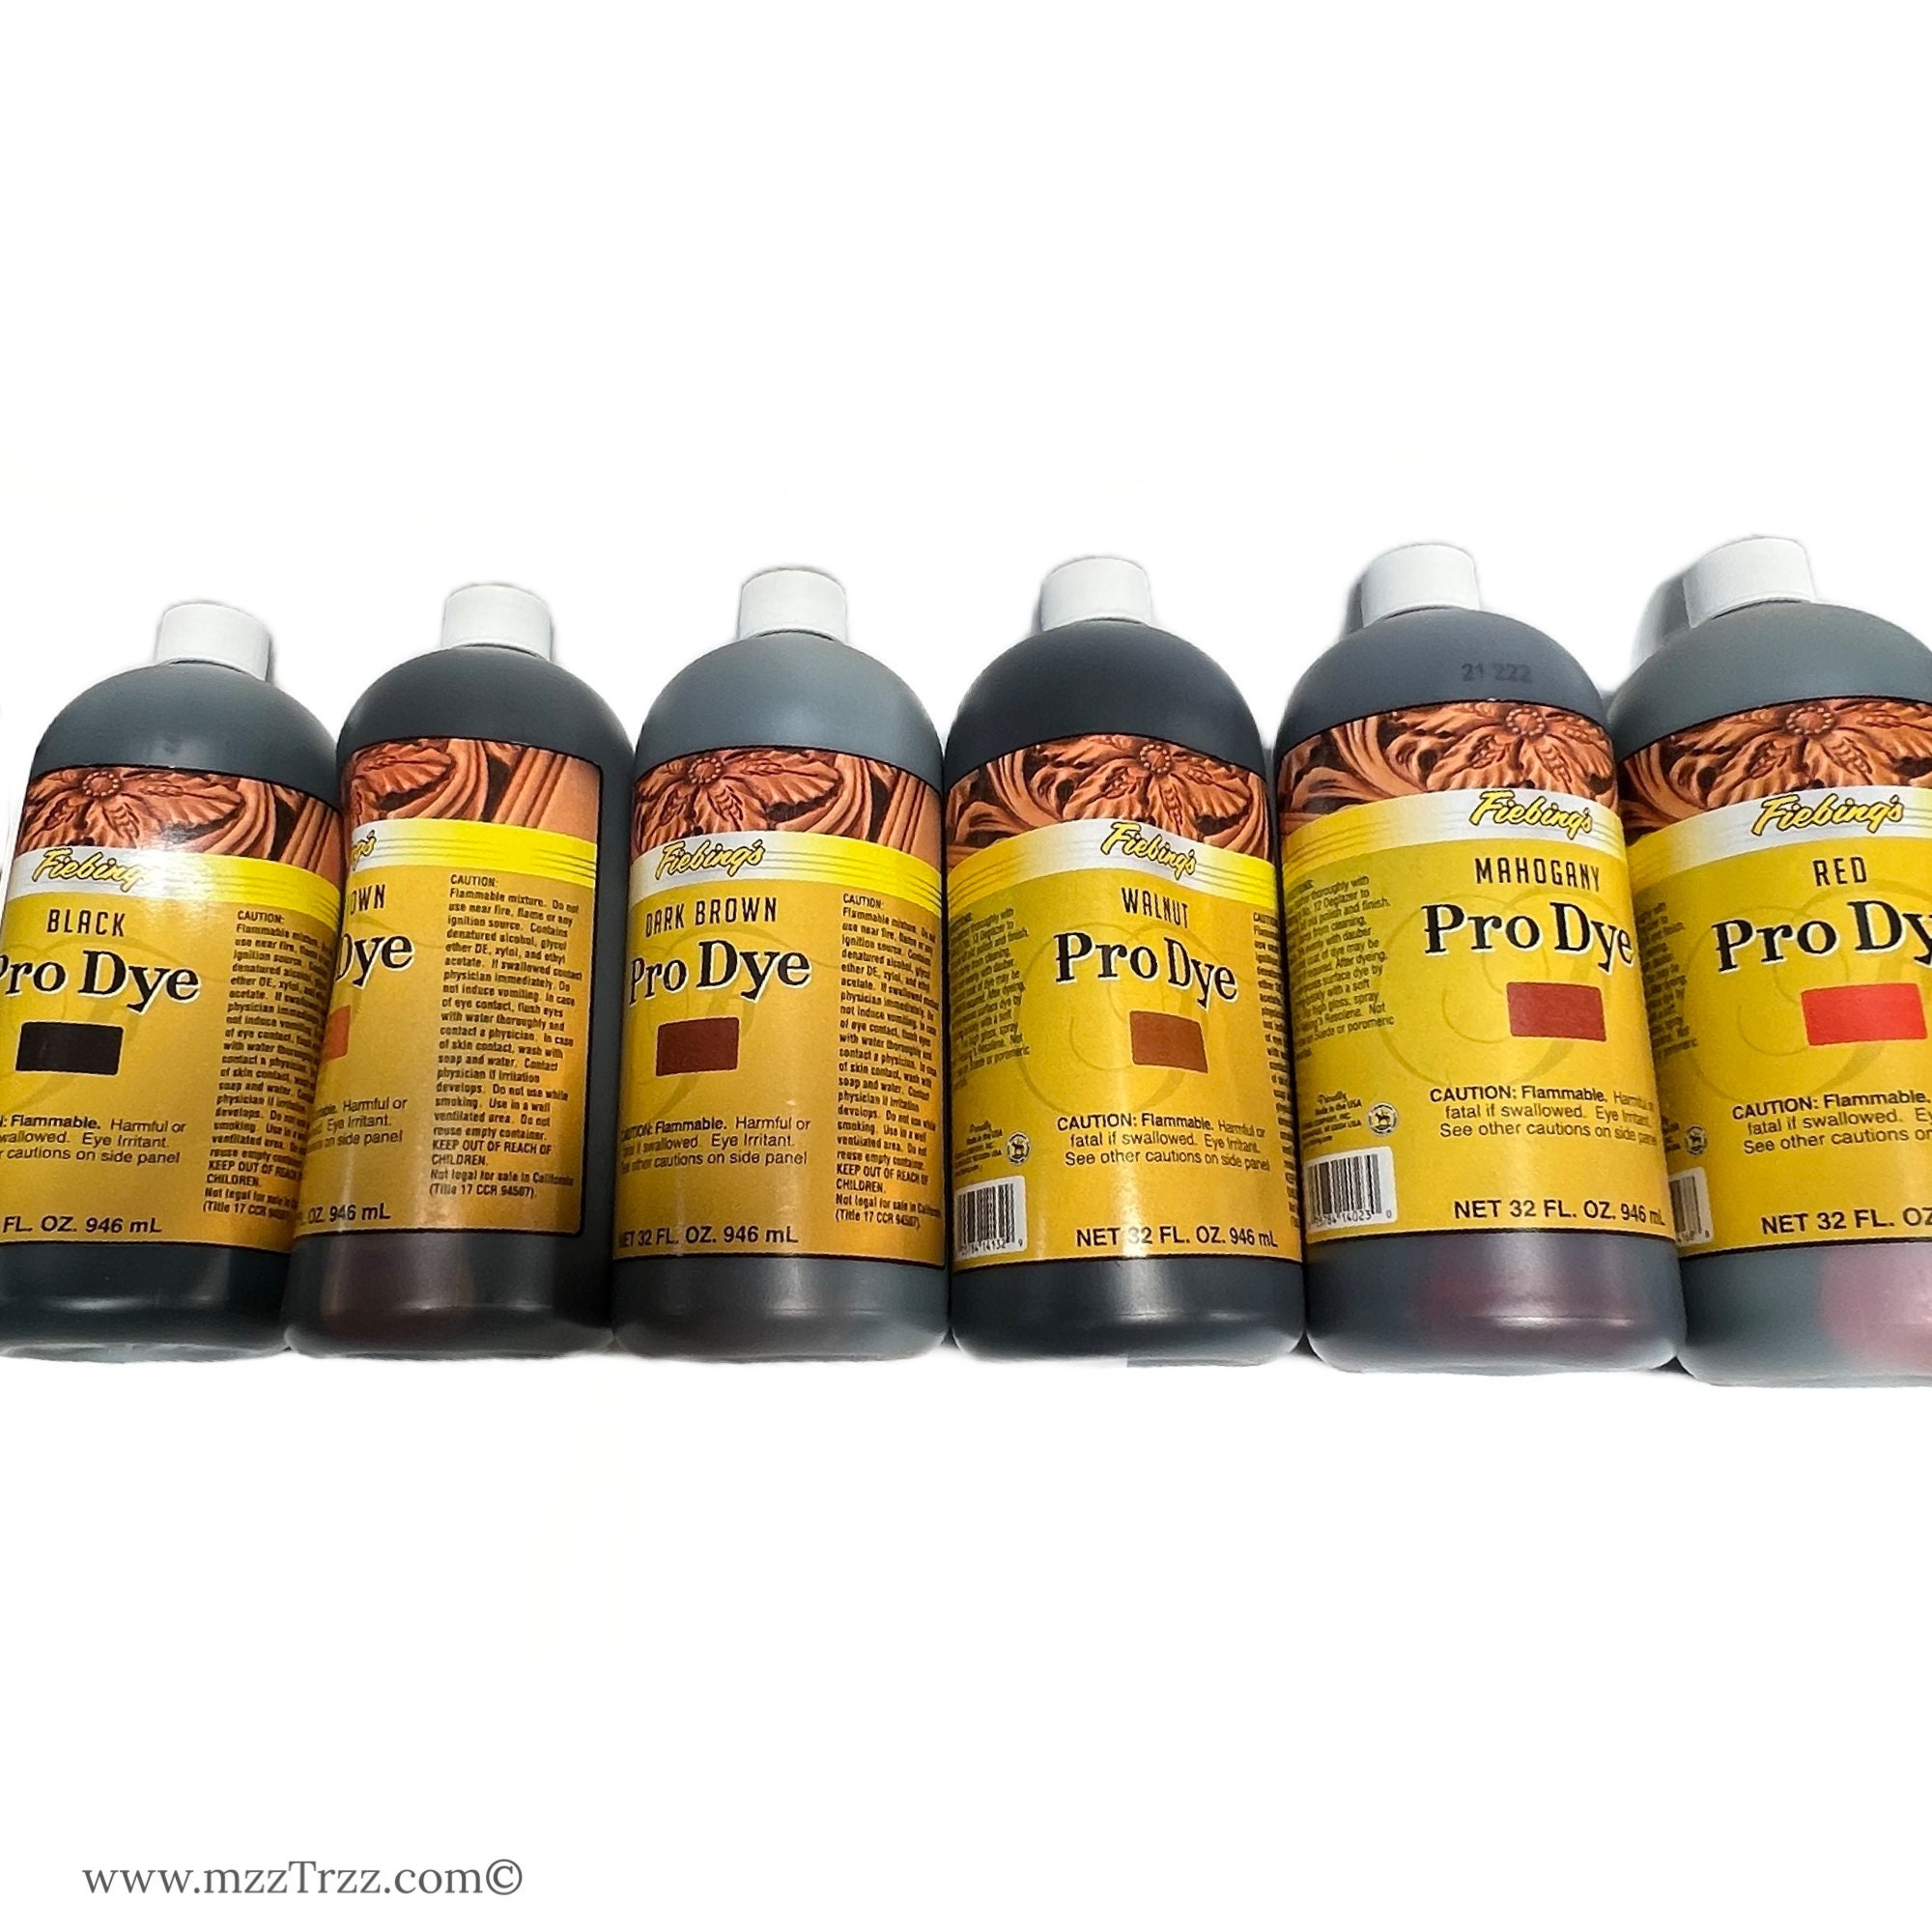 32Oz Fiebings Pro Dye - Birdsall Leather Pty Ltd